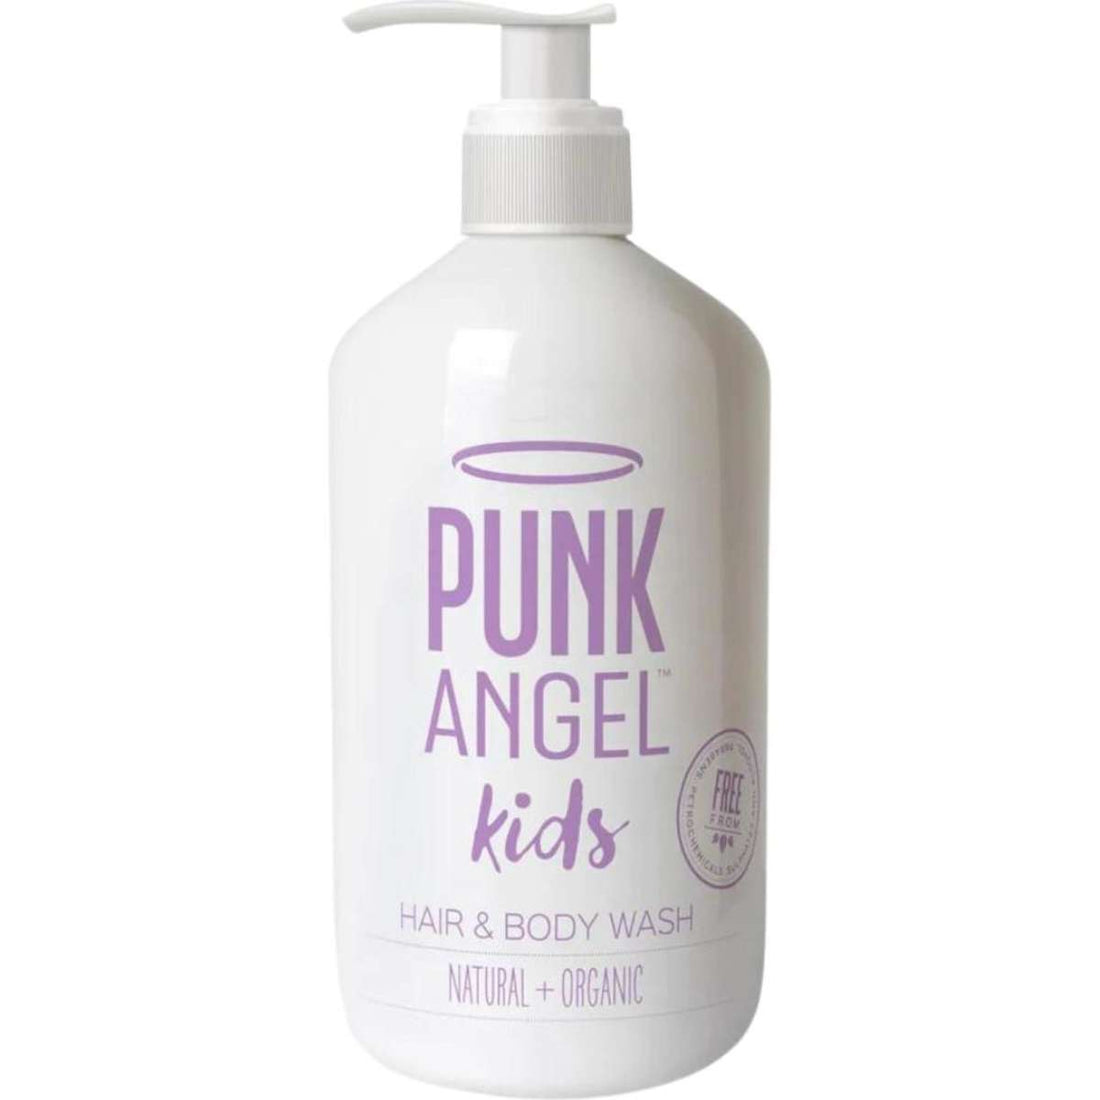 Punk Angel Detangler, Hair & Body Wash 500ml 2 Pack